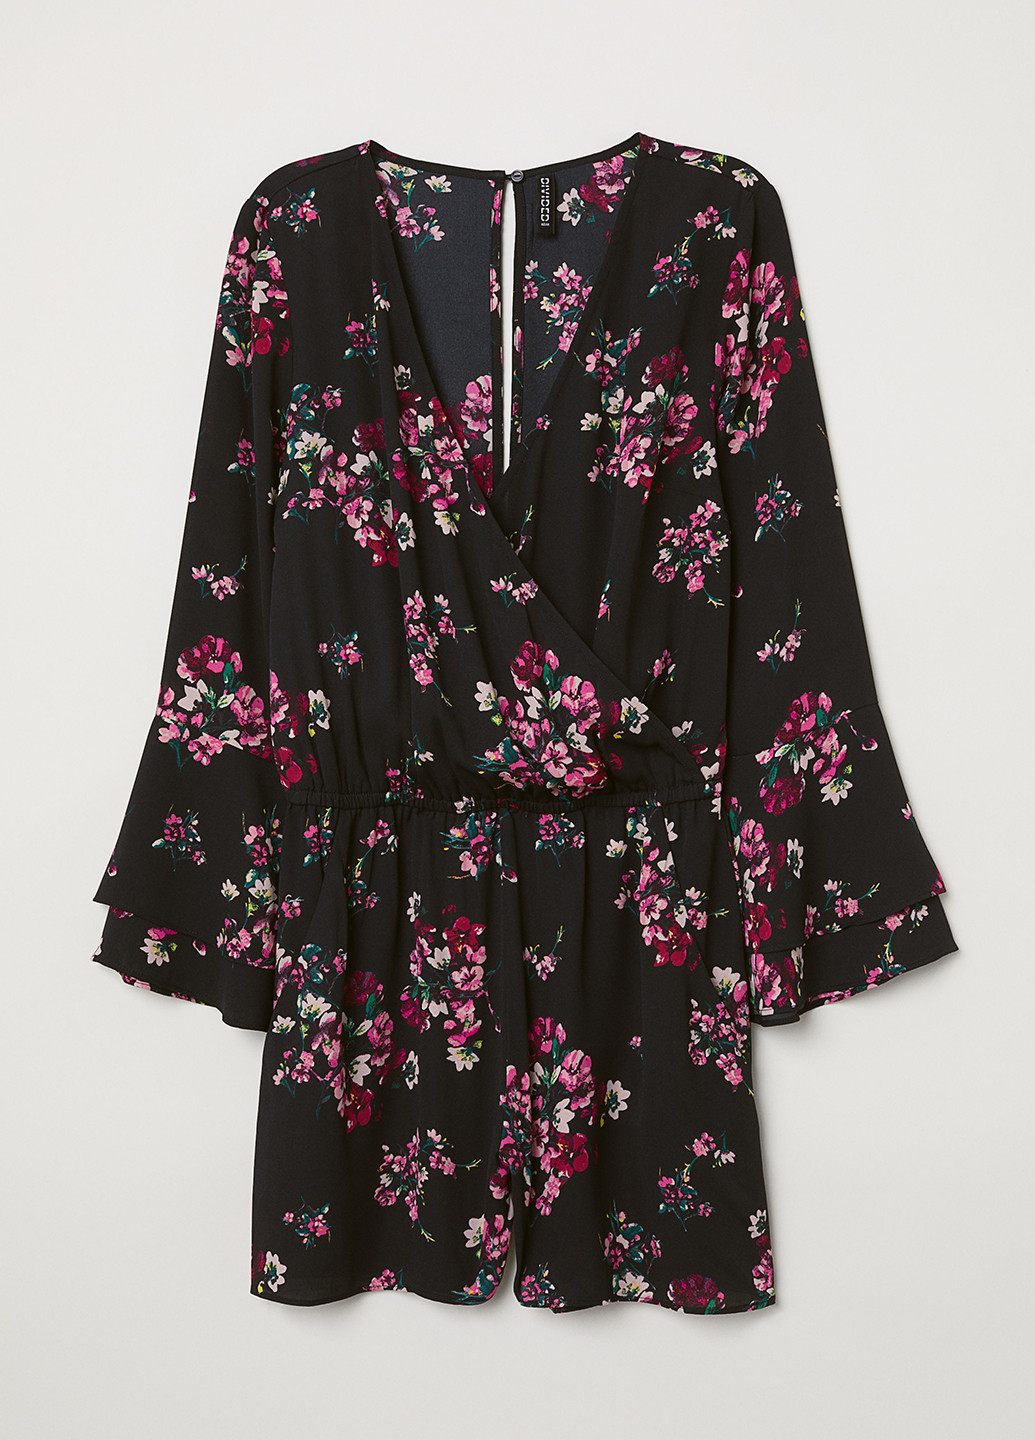 Комбинезон H&M комбинезон-шорты цветочный чёрный кэжуал